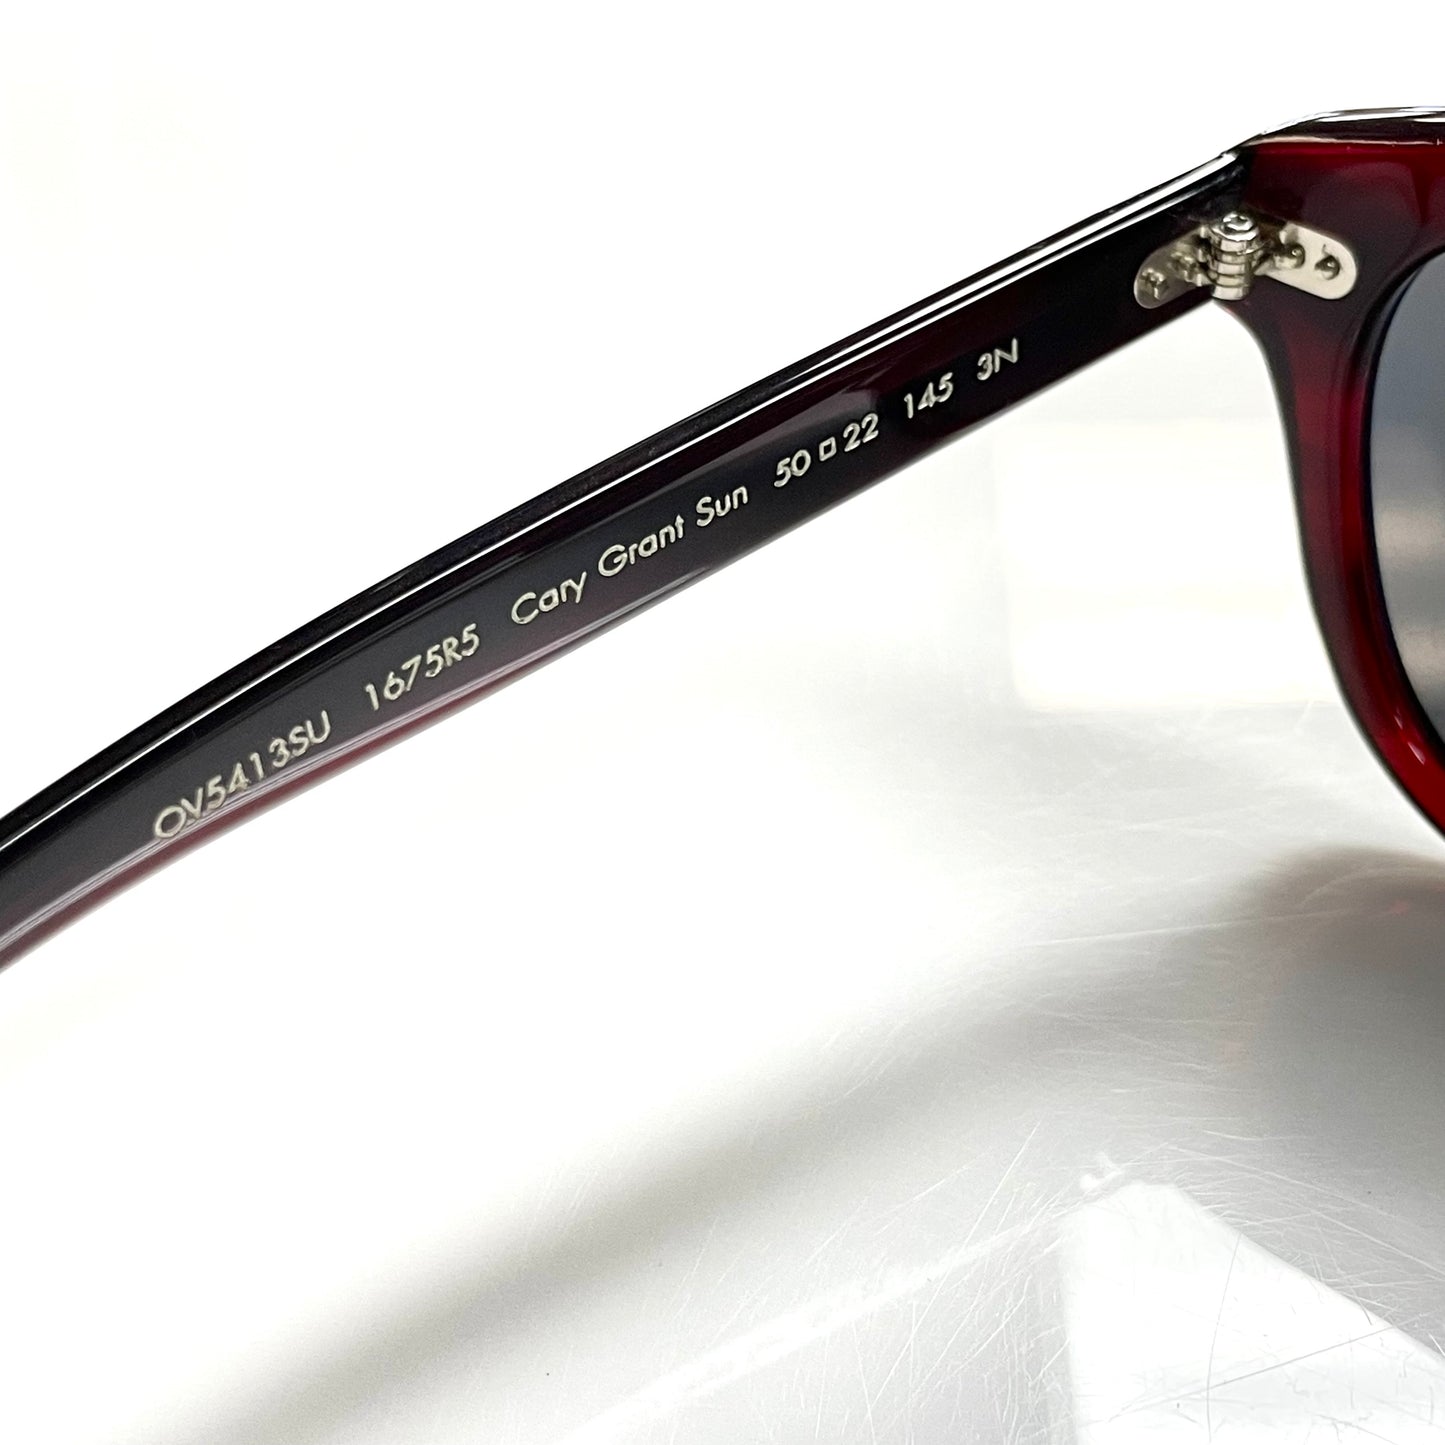 Sunglasses Designer By Oliver People